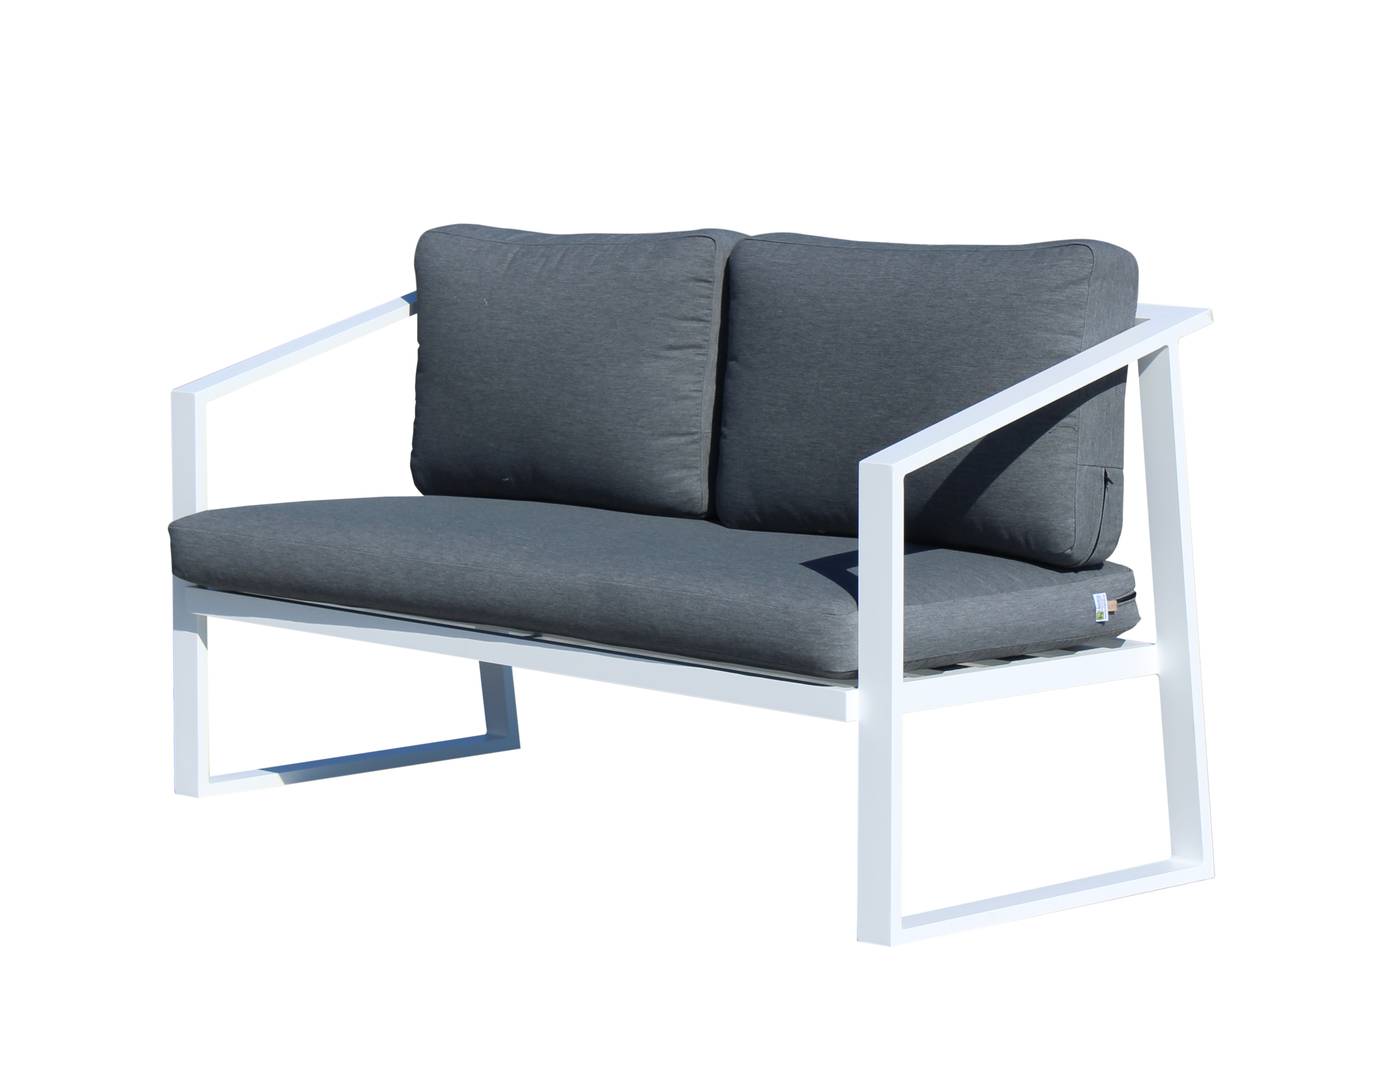 Set Aluminio Sadem-9 - Conjunto aluminio para exterior: sofá 2 plazas + 2 sillones + mesa de centro + 2 taburetes. Fabricado de aluminio en color blanco o antracita.